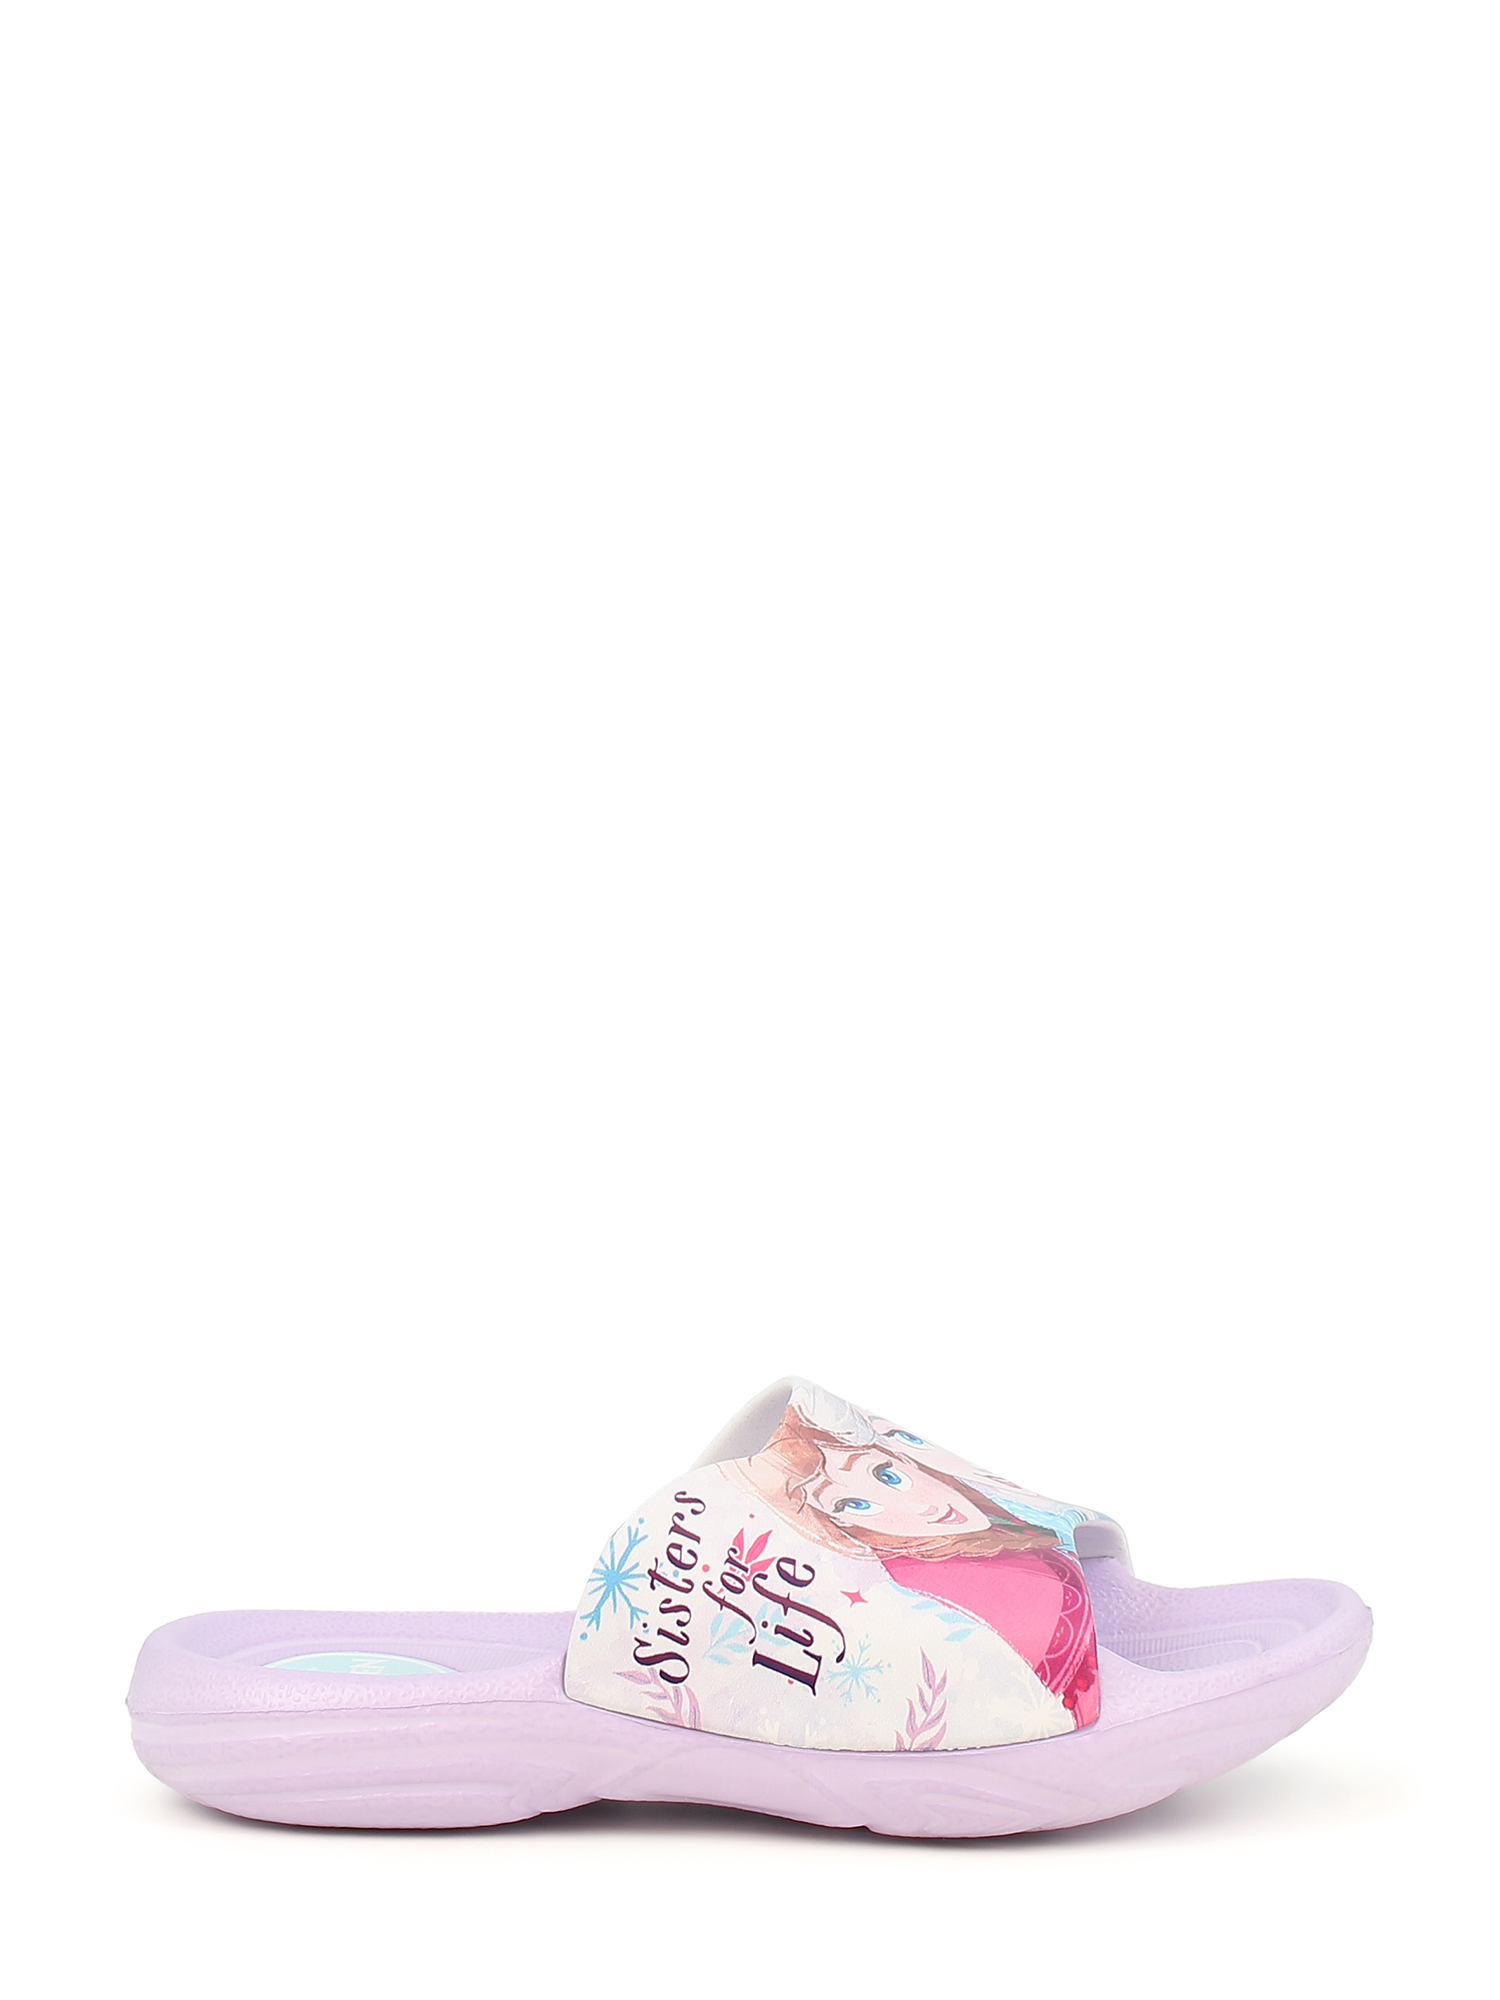 Bilde av Disney Frozen Slippers (30) - Lilla